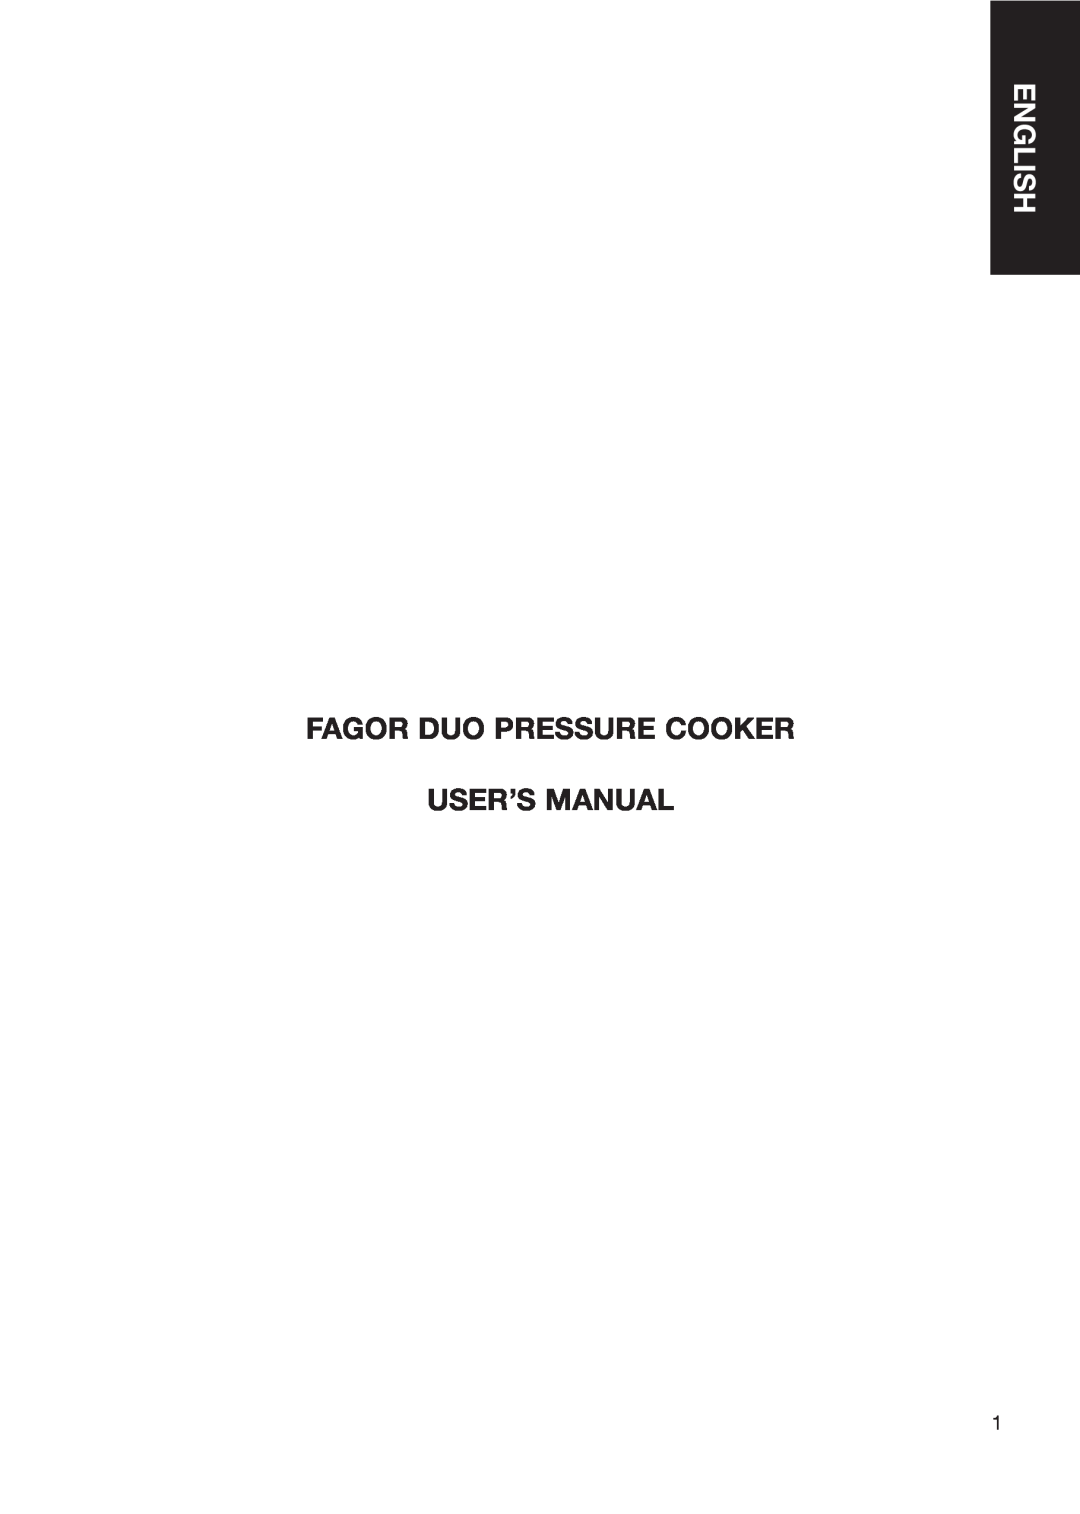 Fagor America fagor duo pressure cooker user manual English, Fagor Duo Pressure Cooker User’S Manual 